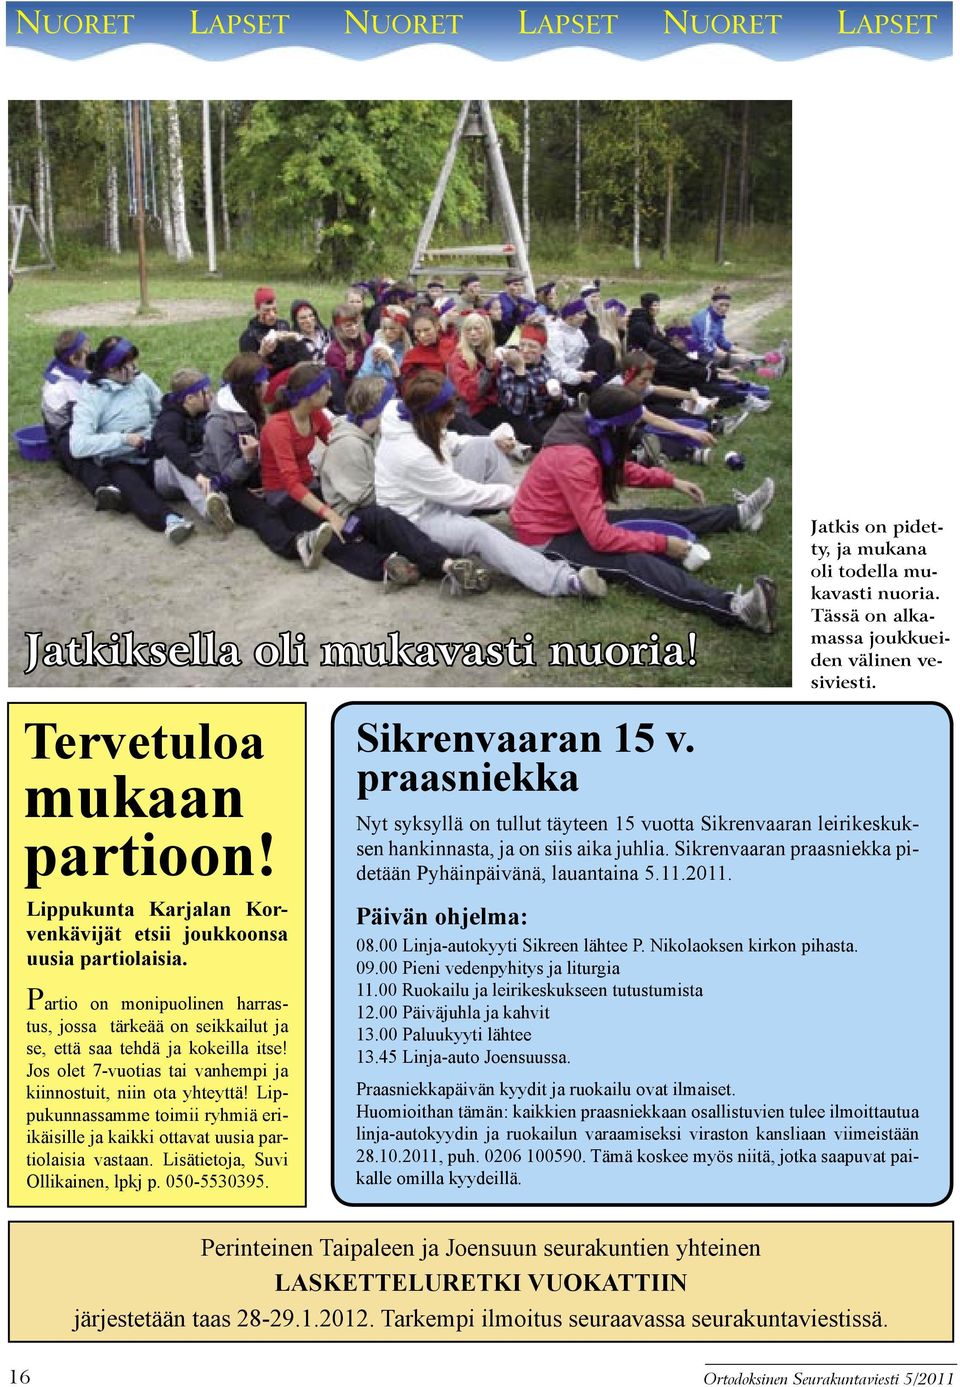 Lippukunnassamme toimii ryhmiä eriikäisille ja kaikki ottavat uusia partiolaisia vastaan. Lisätietoja, Suvi Ollikainen, lpkj p. 050-5530395. Sikrenvaaran 15 v.